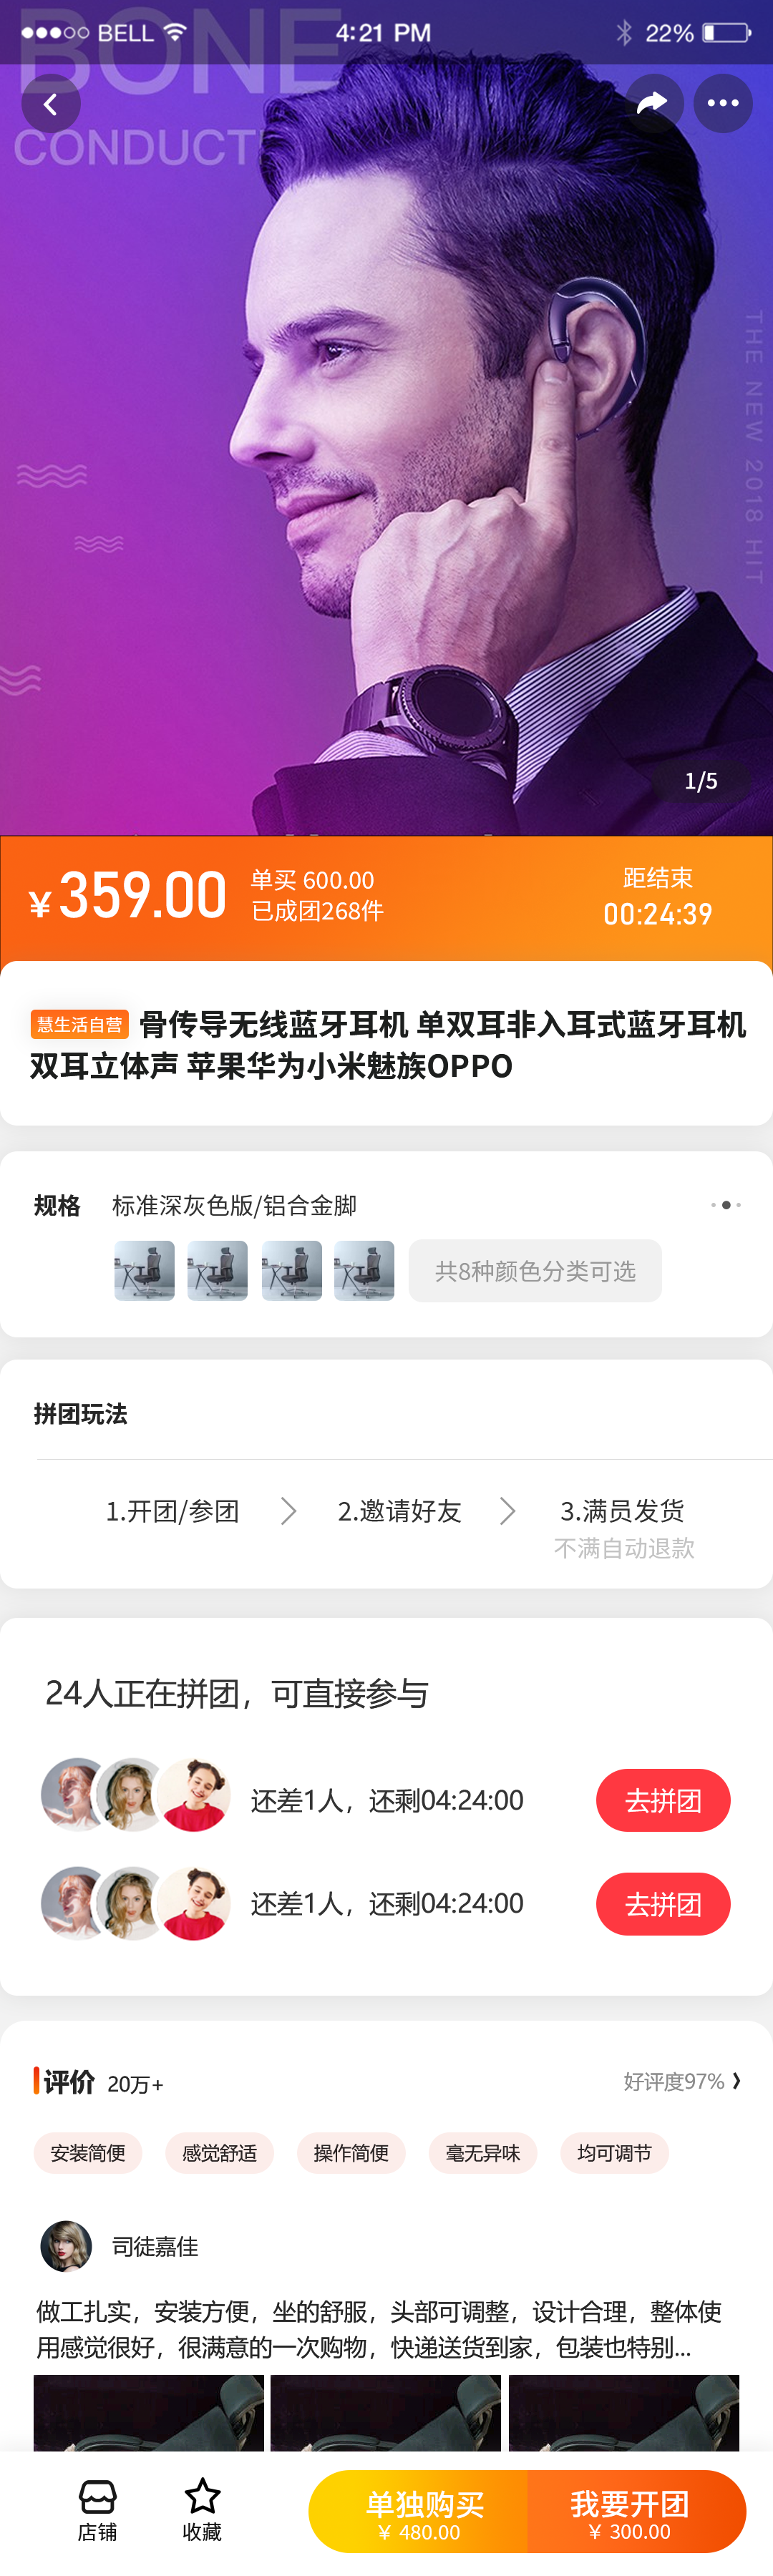 中国燃气-慧生活 UI设计(图5)